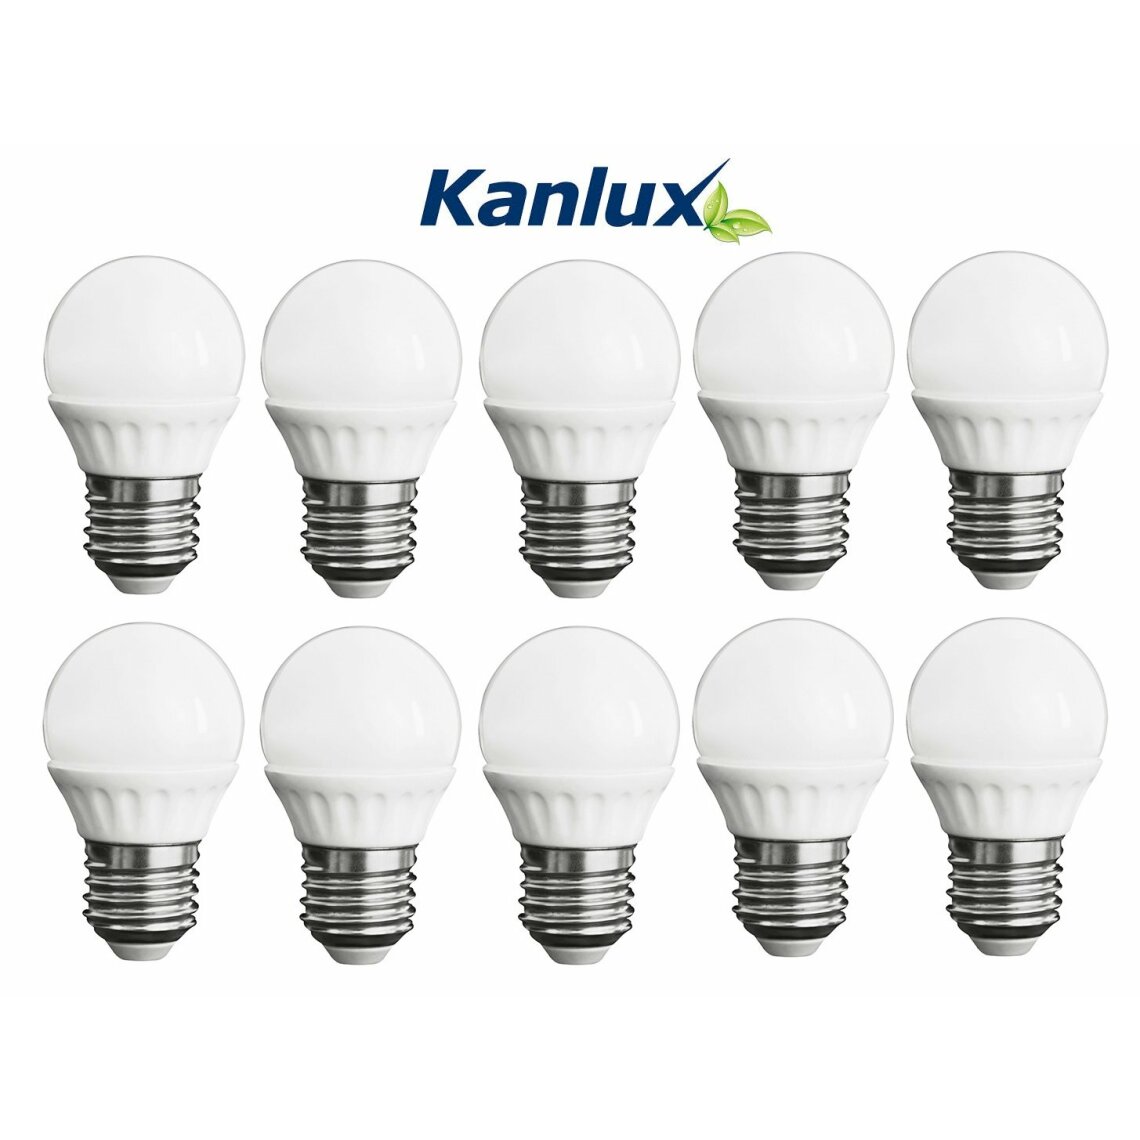 Kanlux - Pack de 10 Ampoules LED Ronde E27 5,0W 3000K Blanc Chaud Marque KANLUX - Ampoules LED